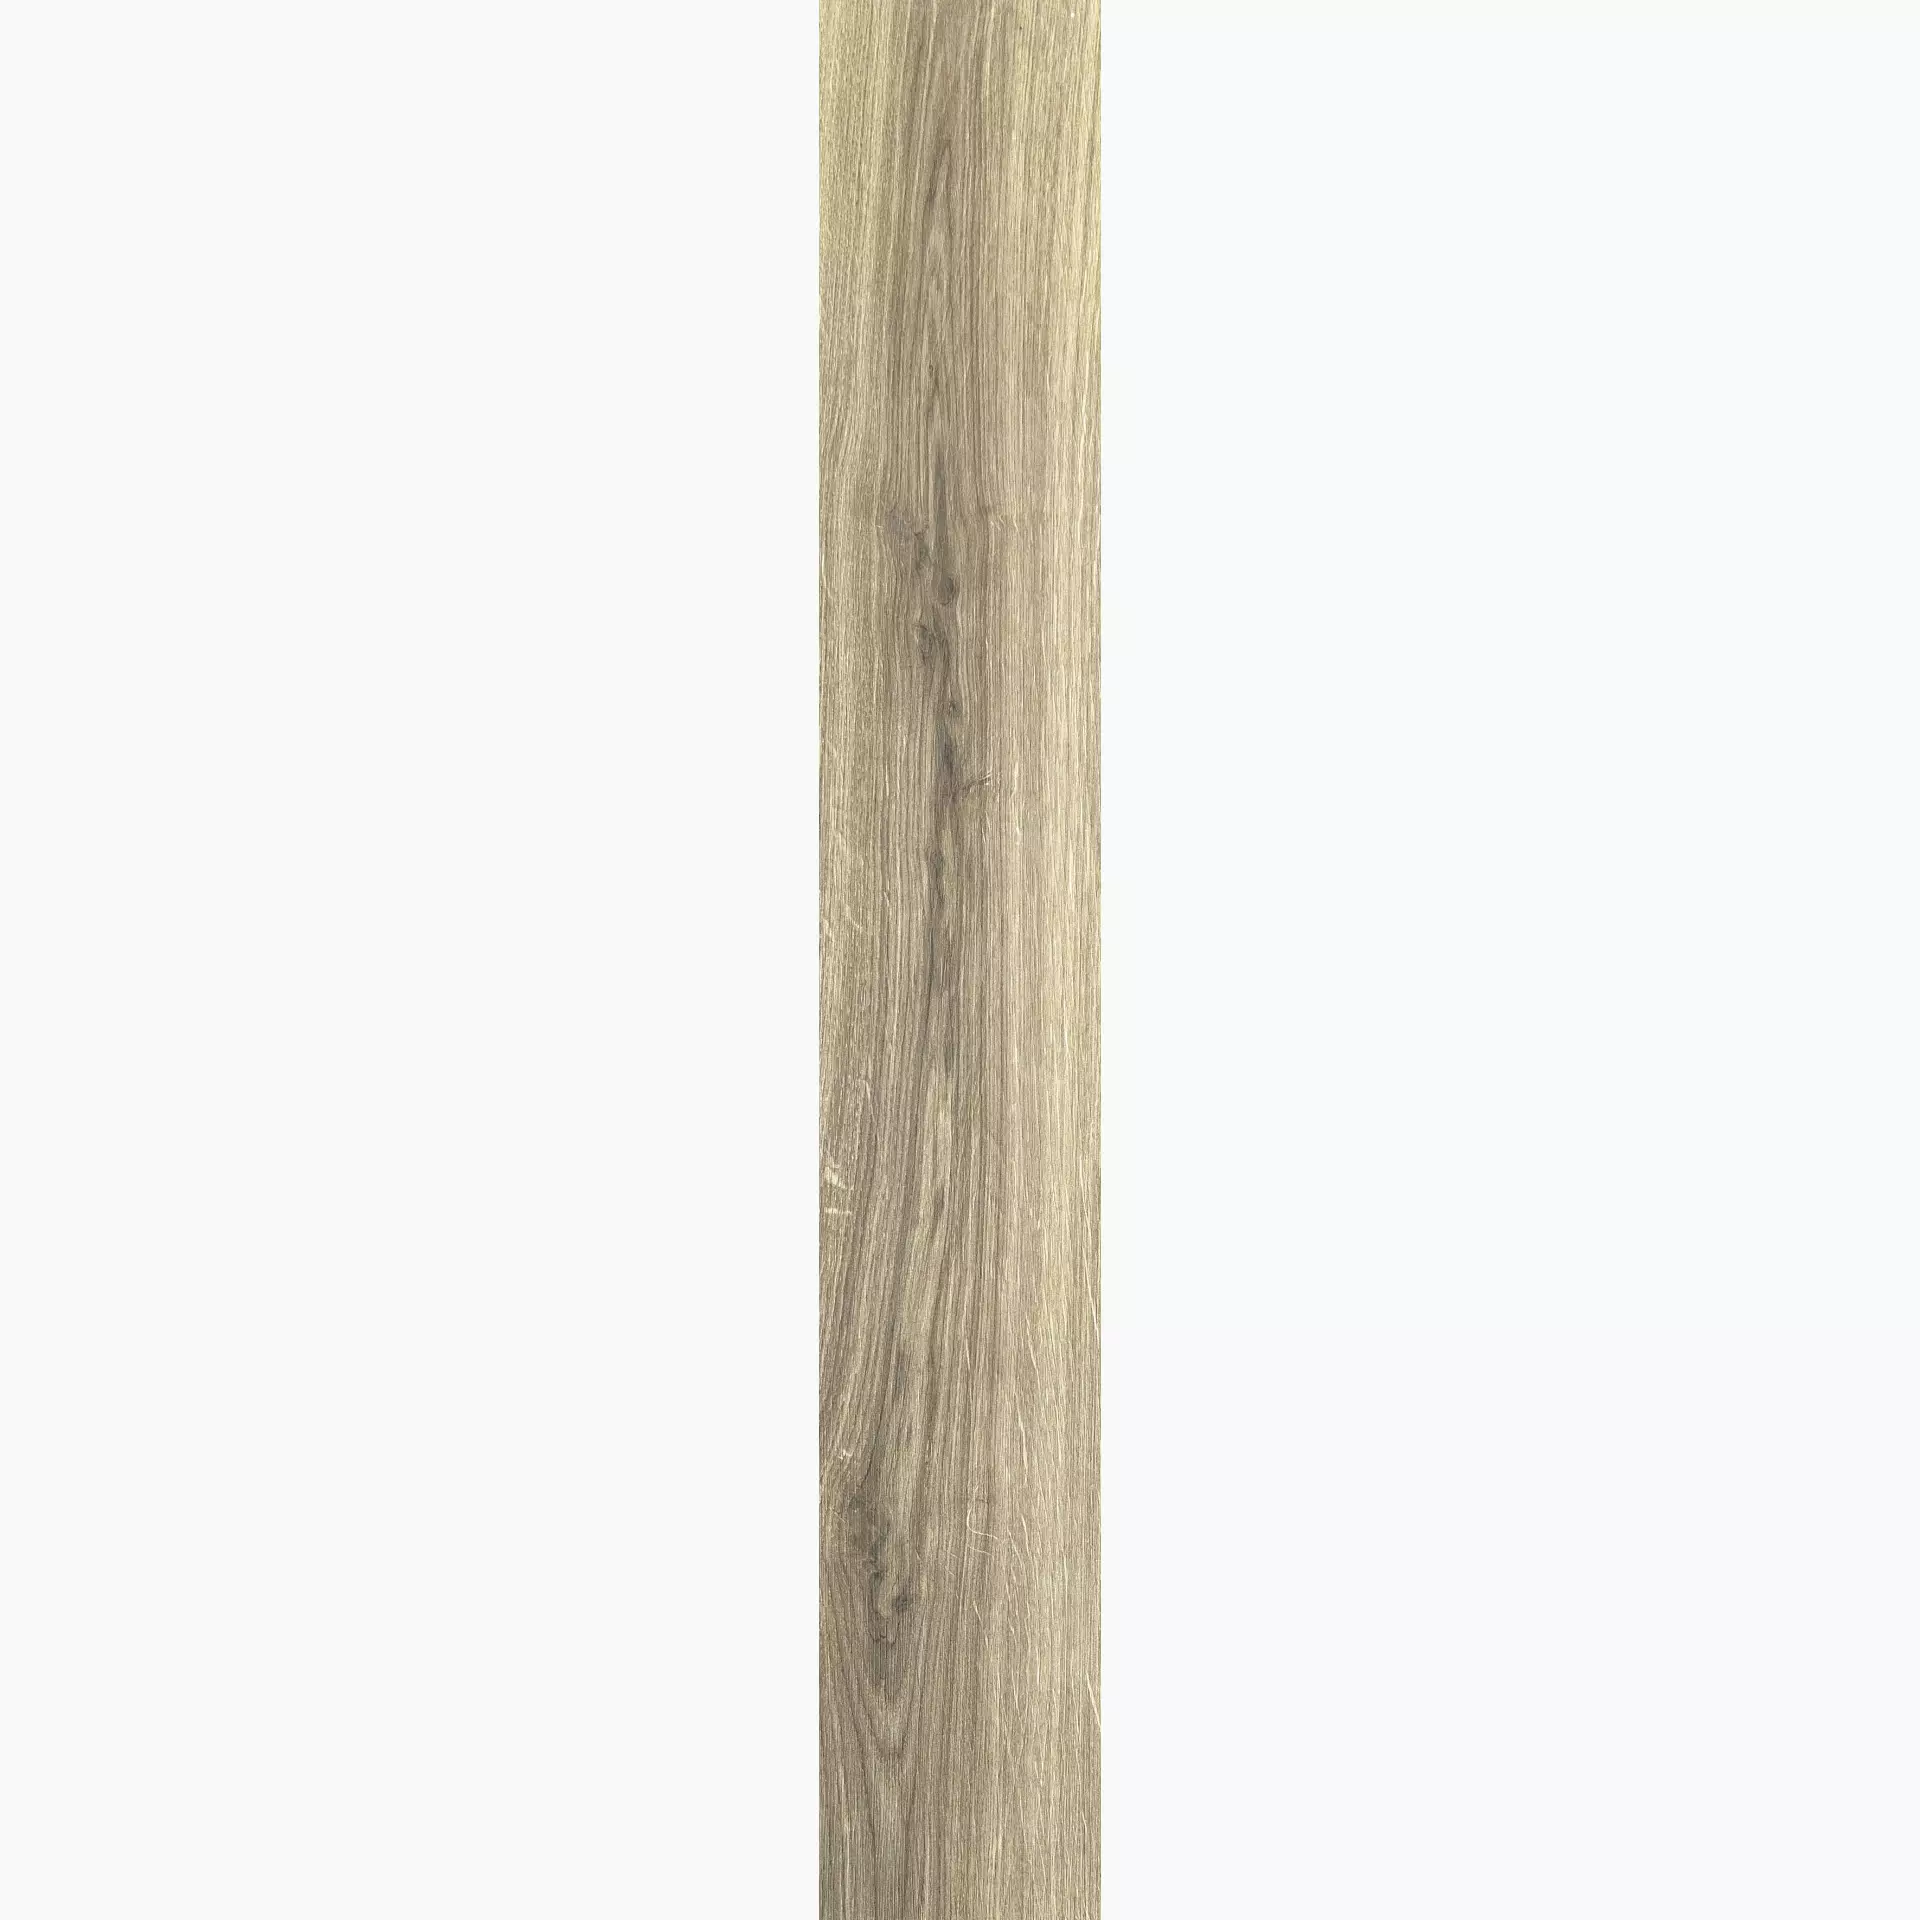 Florim Planches De Rex Miele Naturale – Matt 755694 26,5x180cm rectified 9mm